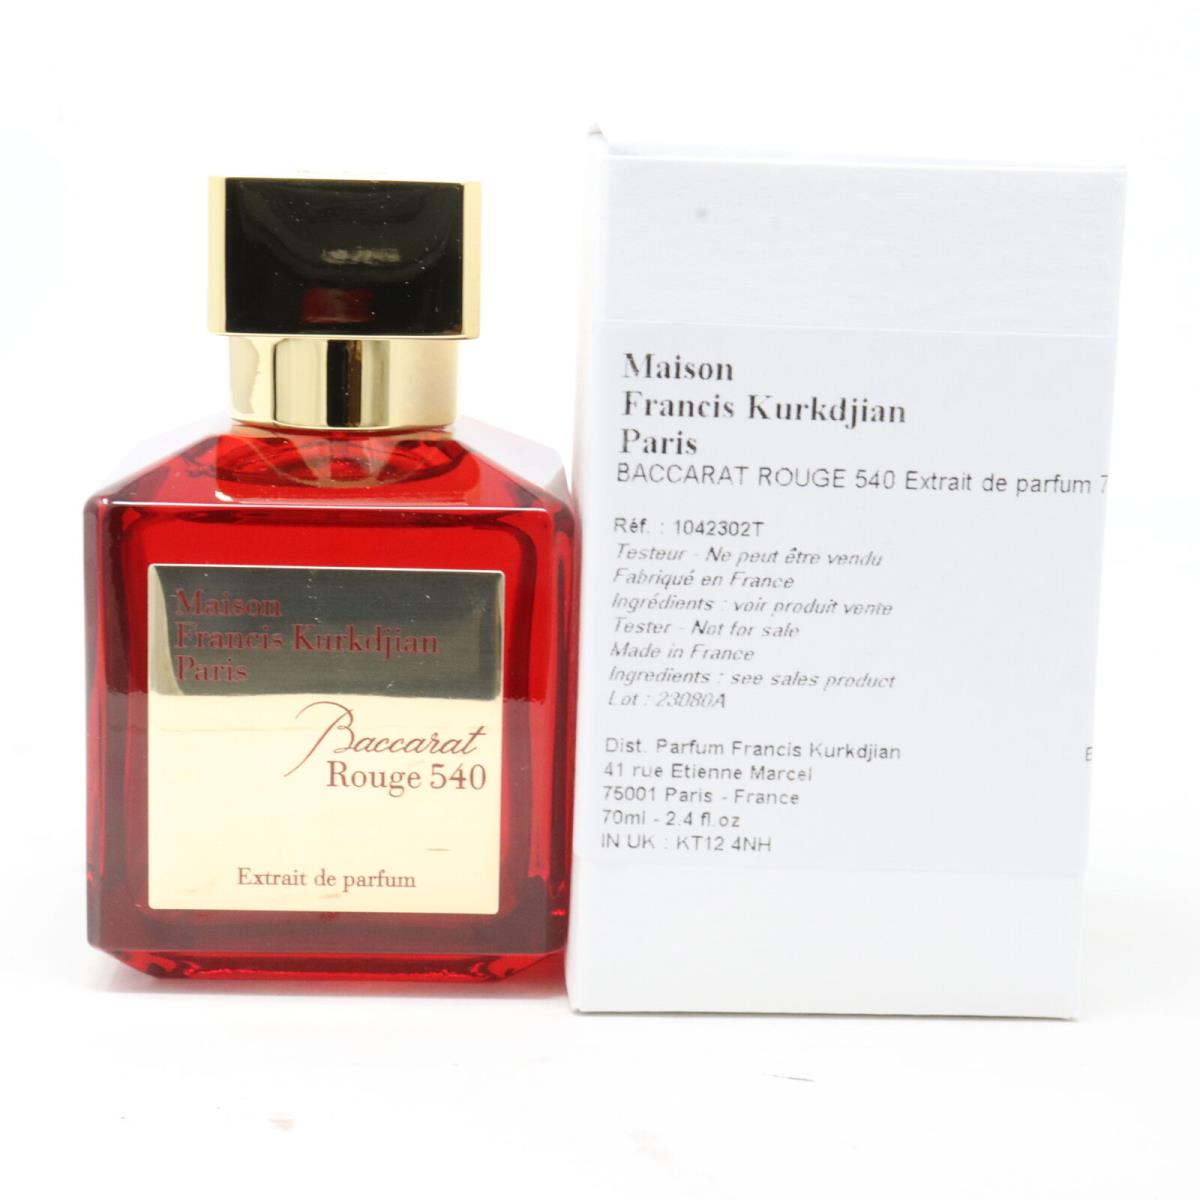 Baccarat Rouge 540 by Maison Francis Kurkdjian Extrait De Parfum 2.4oz